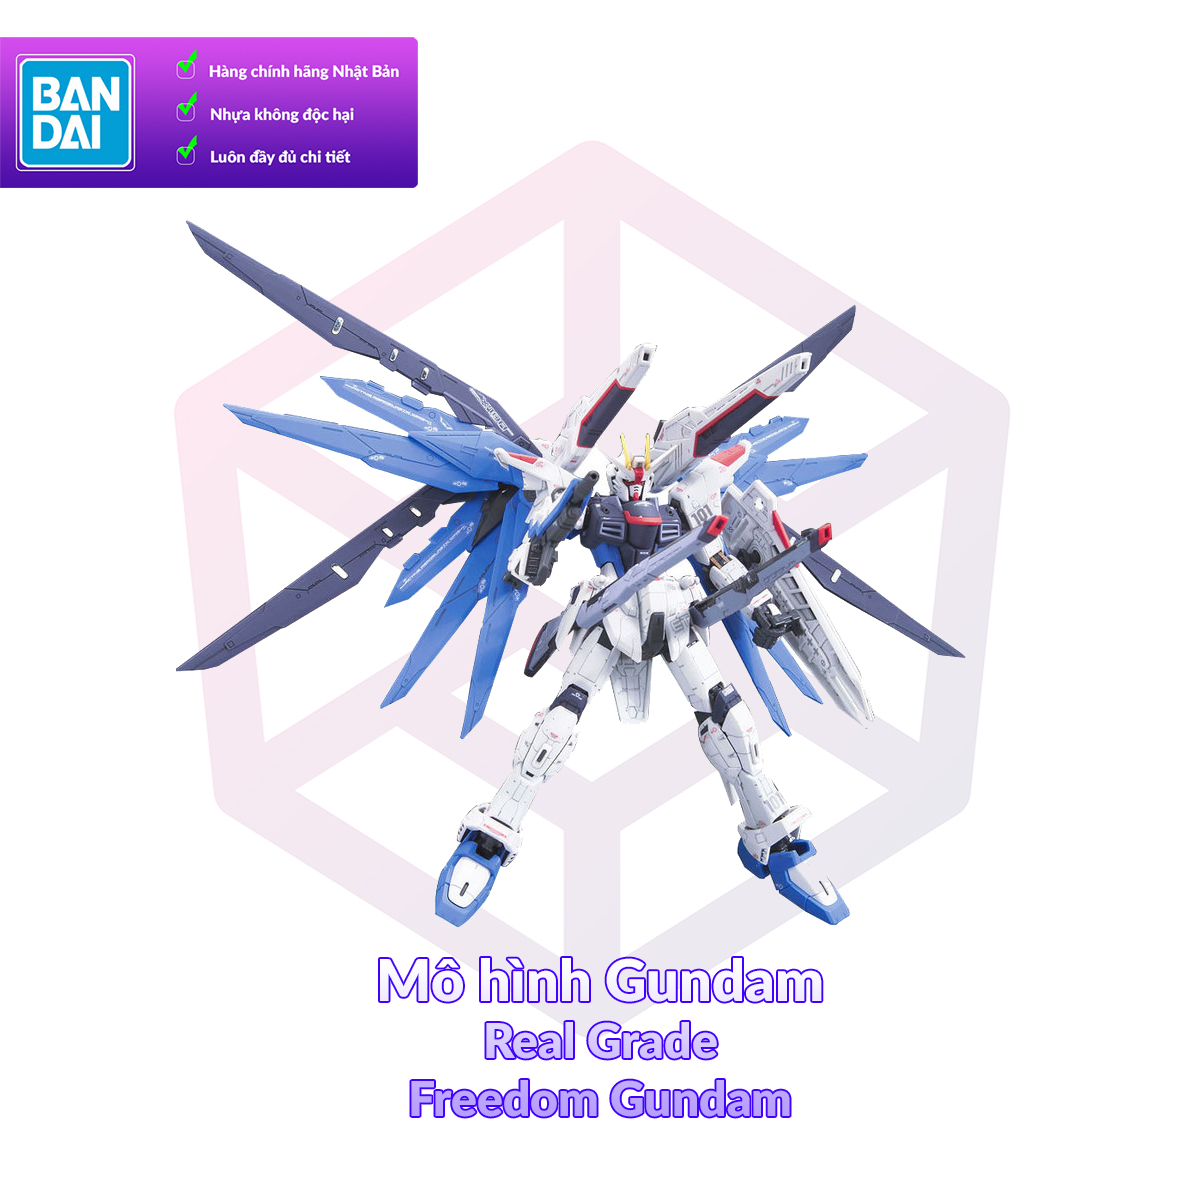 7-11 12 VOUCHER 8%Mô hình Gundam Bandai RG 05 Freedom Gundam 1 144 SEED